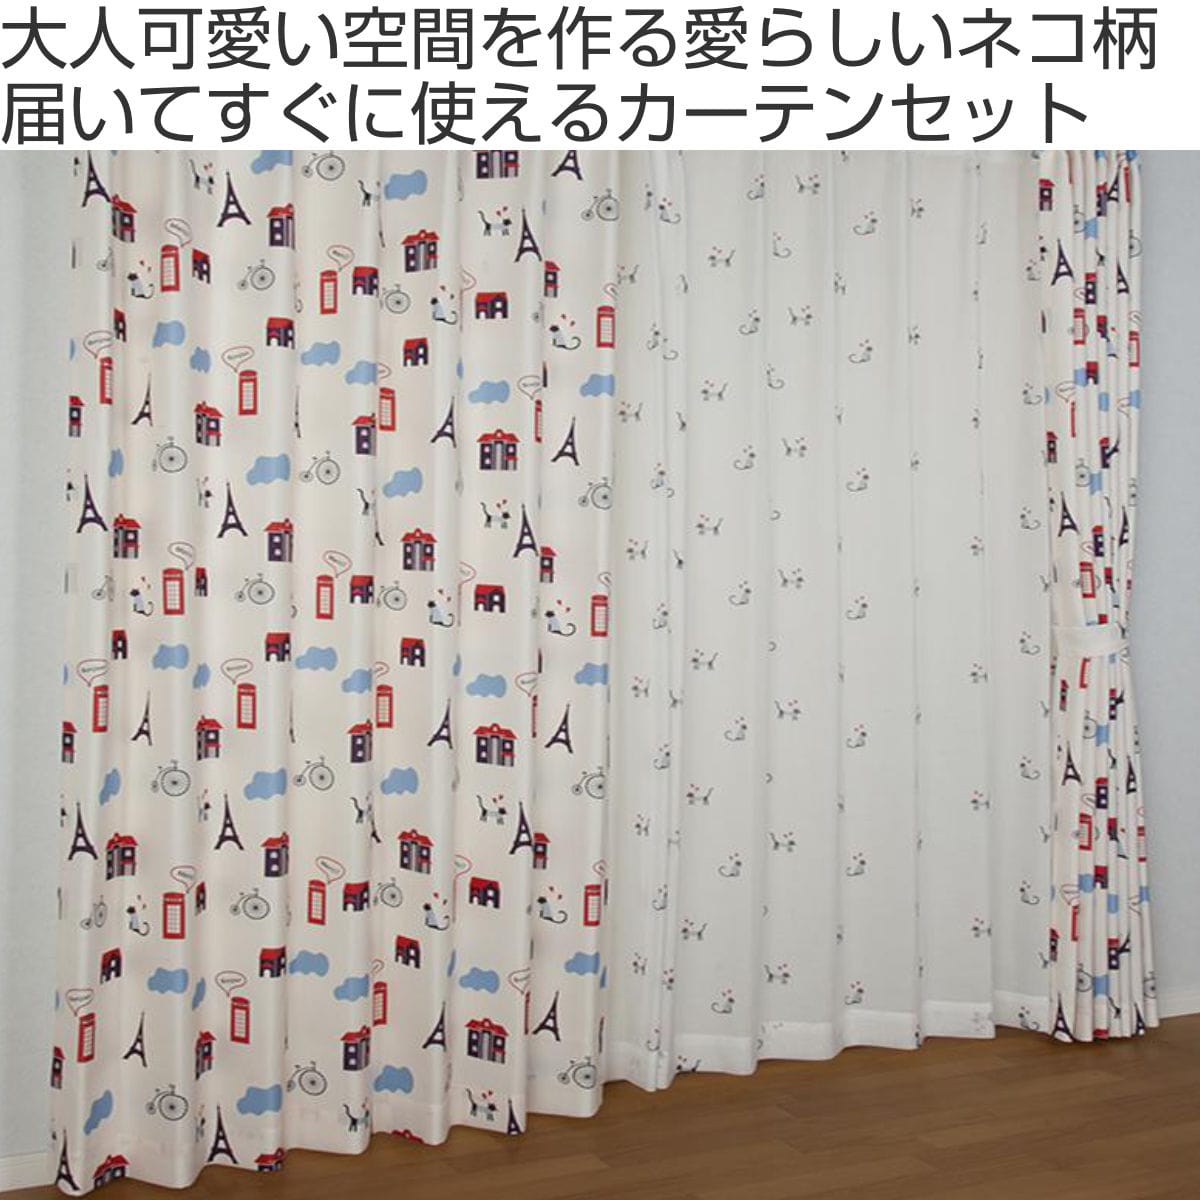 カーテン ネコ柄セットカーテン 100×135cm 4枚組 ドレープカーテン